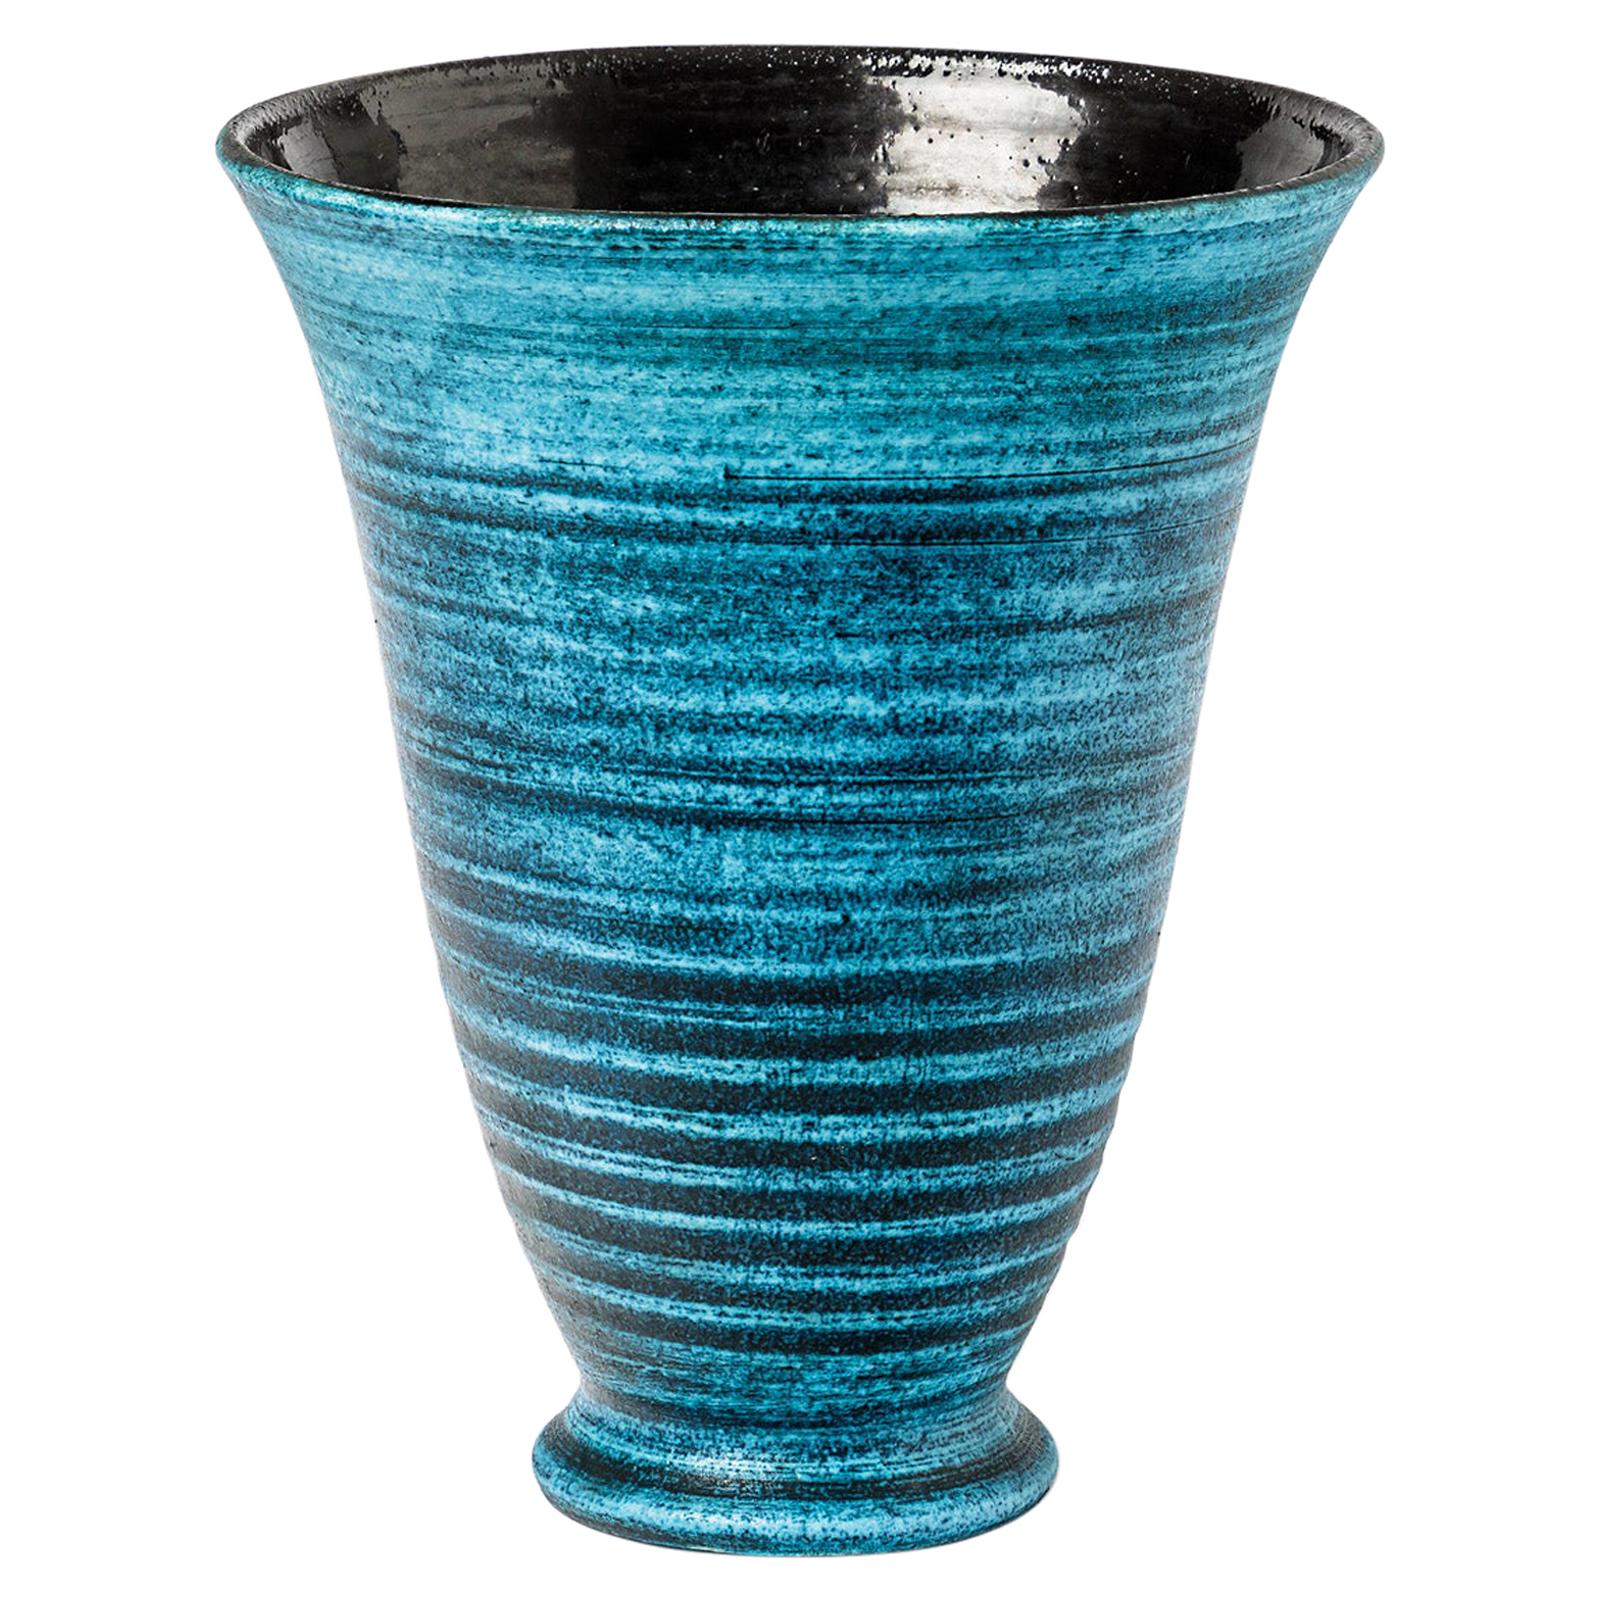 Keramikvase mit blauer Glasurdekoration von Accolay, ca. 1960–1970